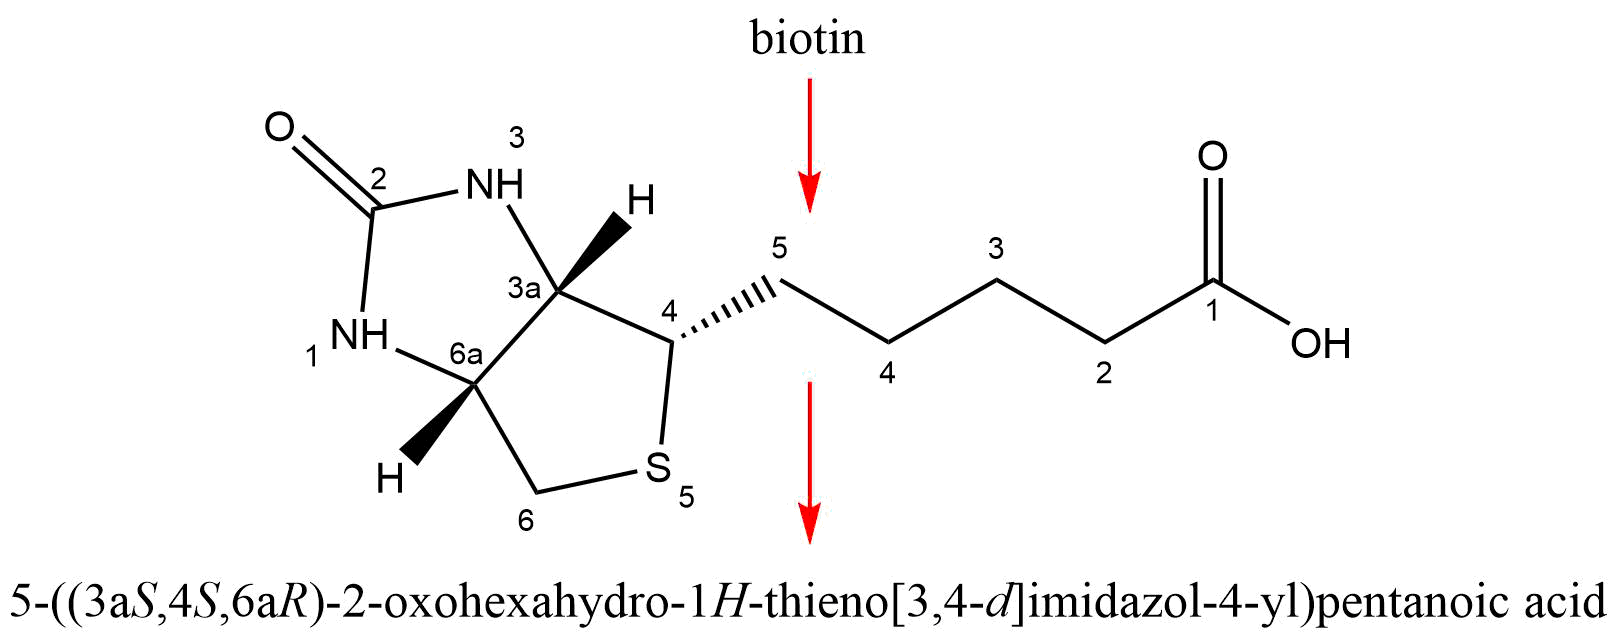 Molécula de Biotina numerada y nombre obtenido a través de esta estructura